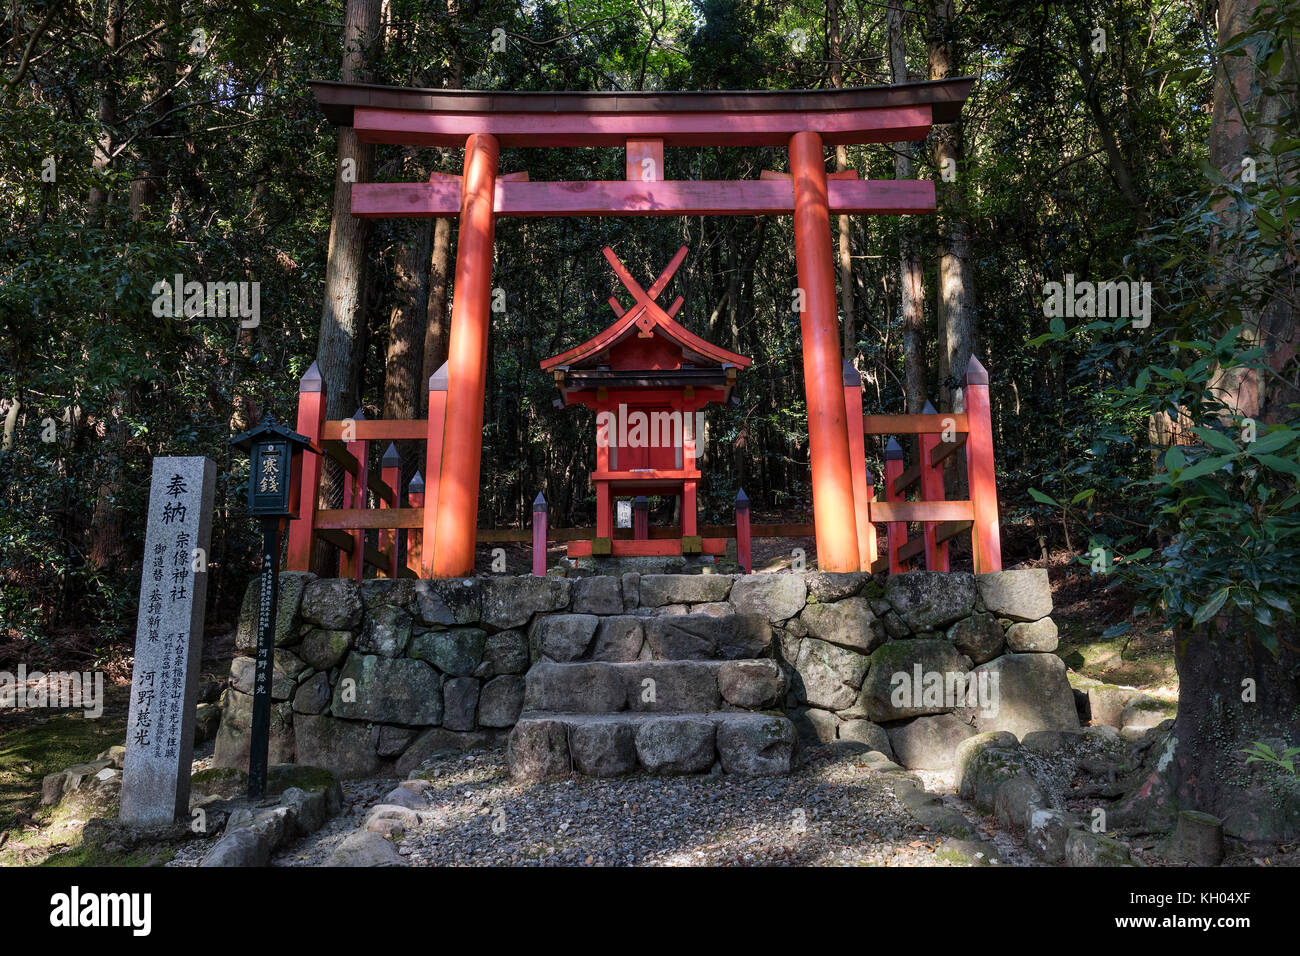 Nara - Giappone, 29 maggio 2017: torii gate e sacrario scintoista nell'kasugayama foreste vergini, registrato come sito patrimonio mondiale dell'Unesco come parte del Foto Stock